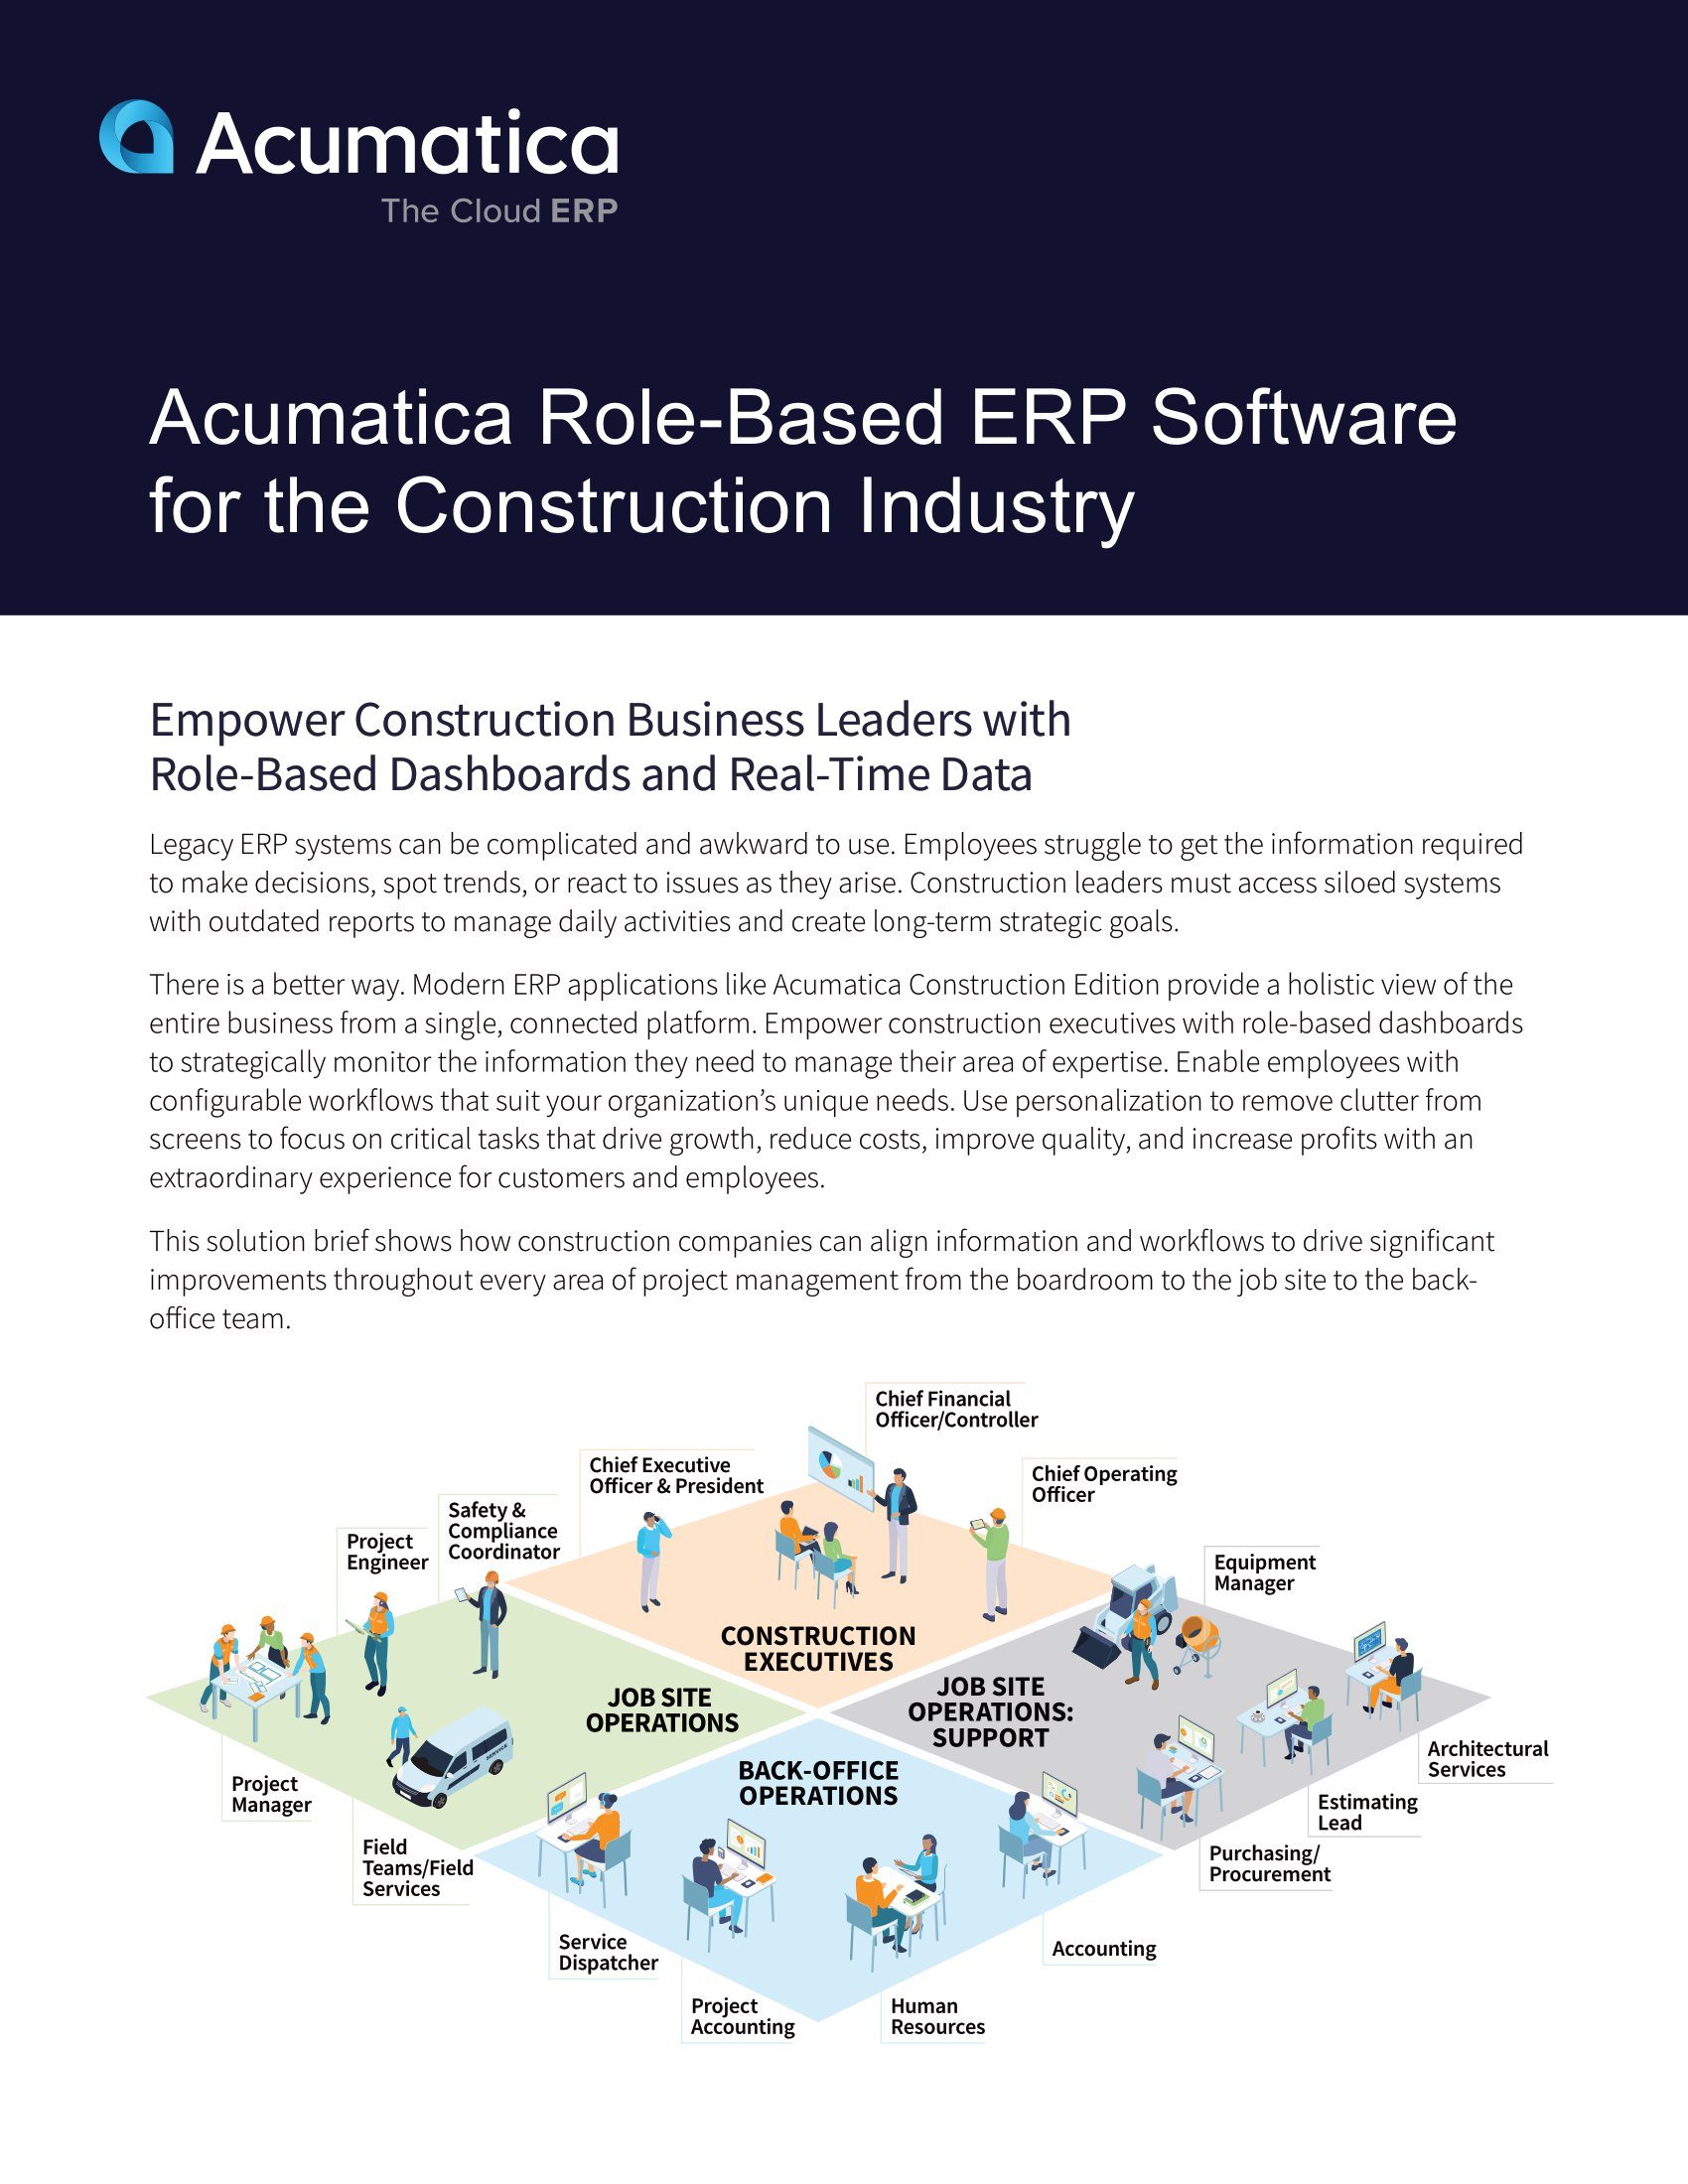 Múltiples funciones de construcción sólo requieren una plataforma ERP